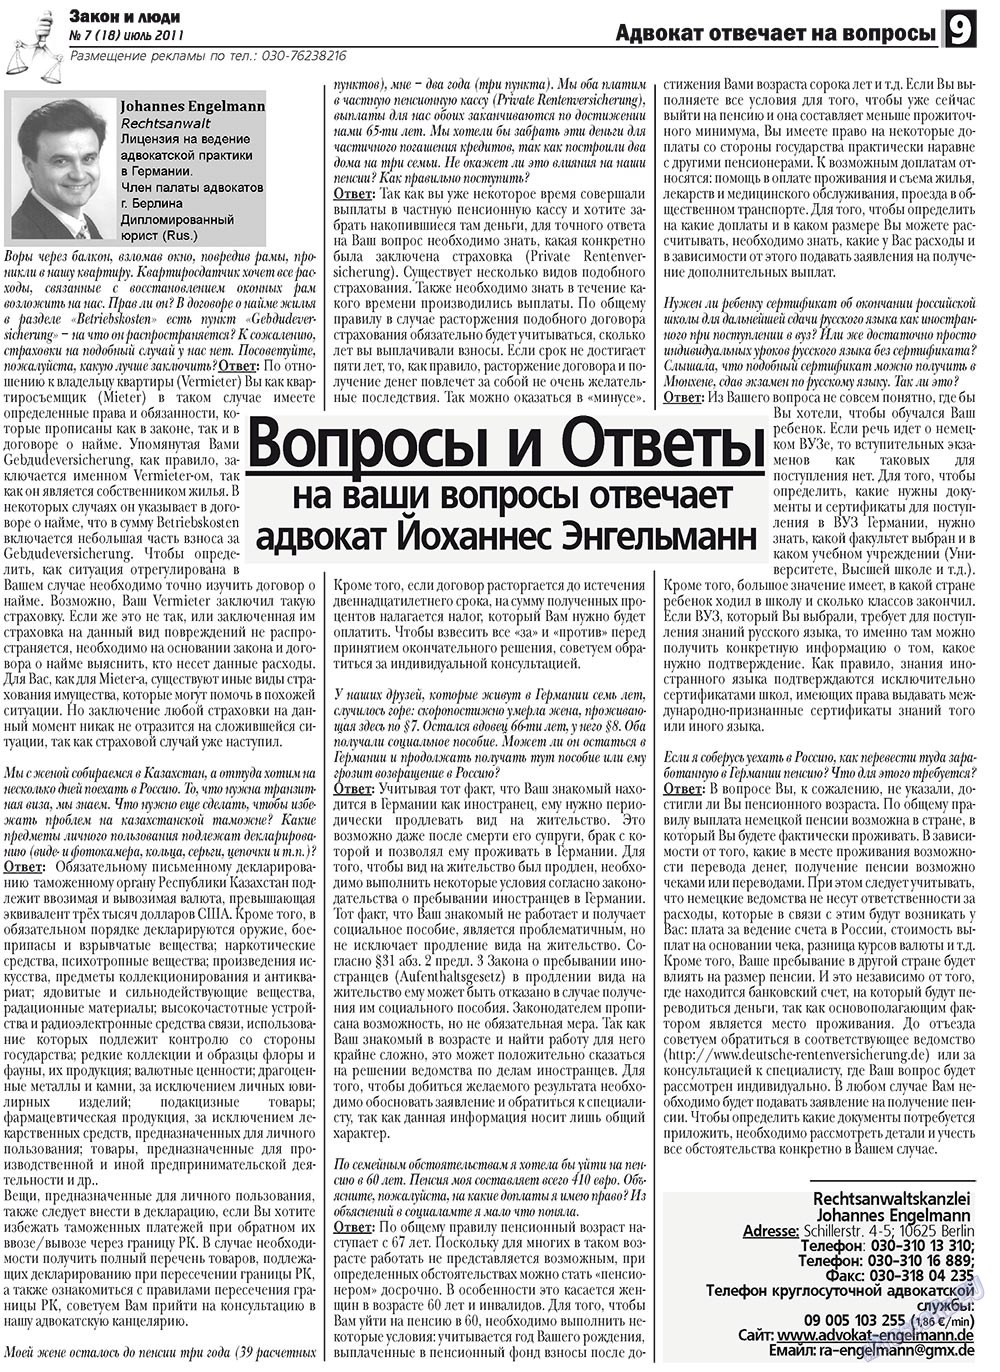 Закон и люди, газета. 2011 №7 стр.9